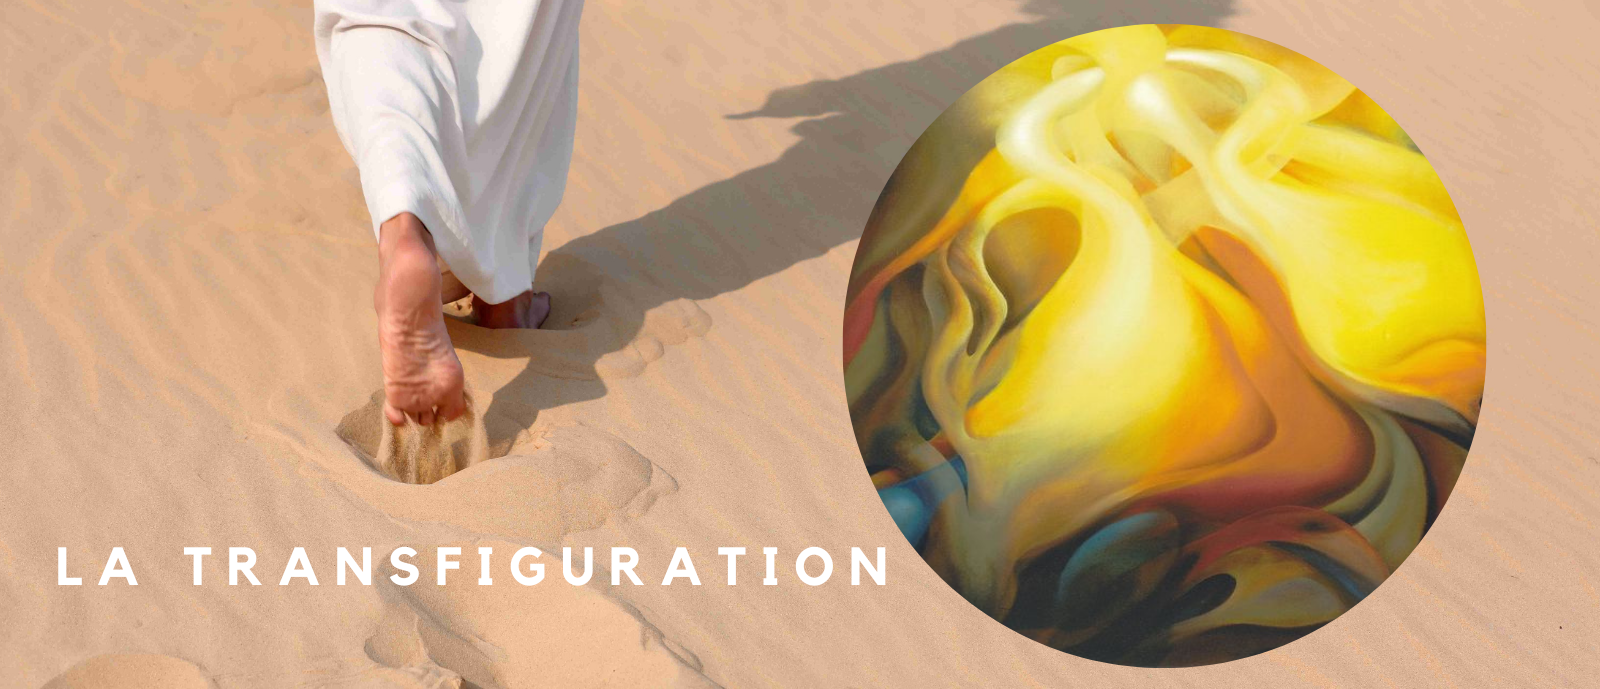 2e dimanche de Carême année B - la transfiguration